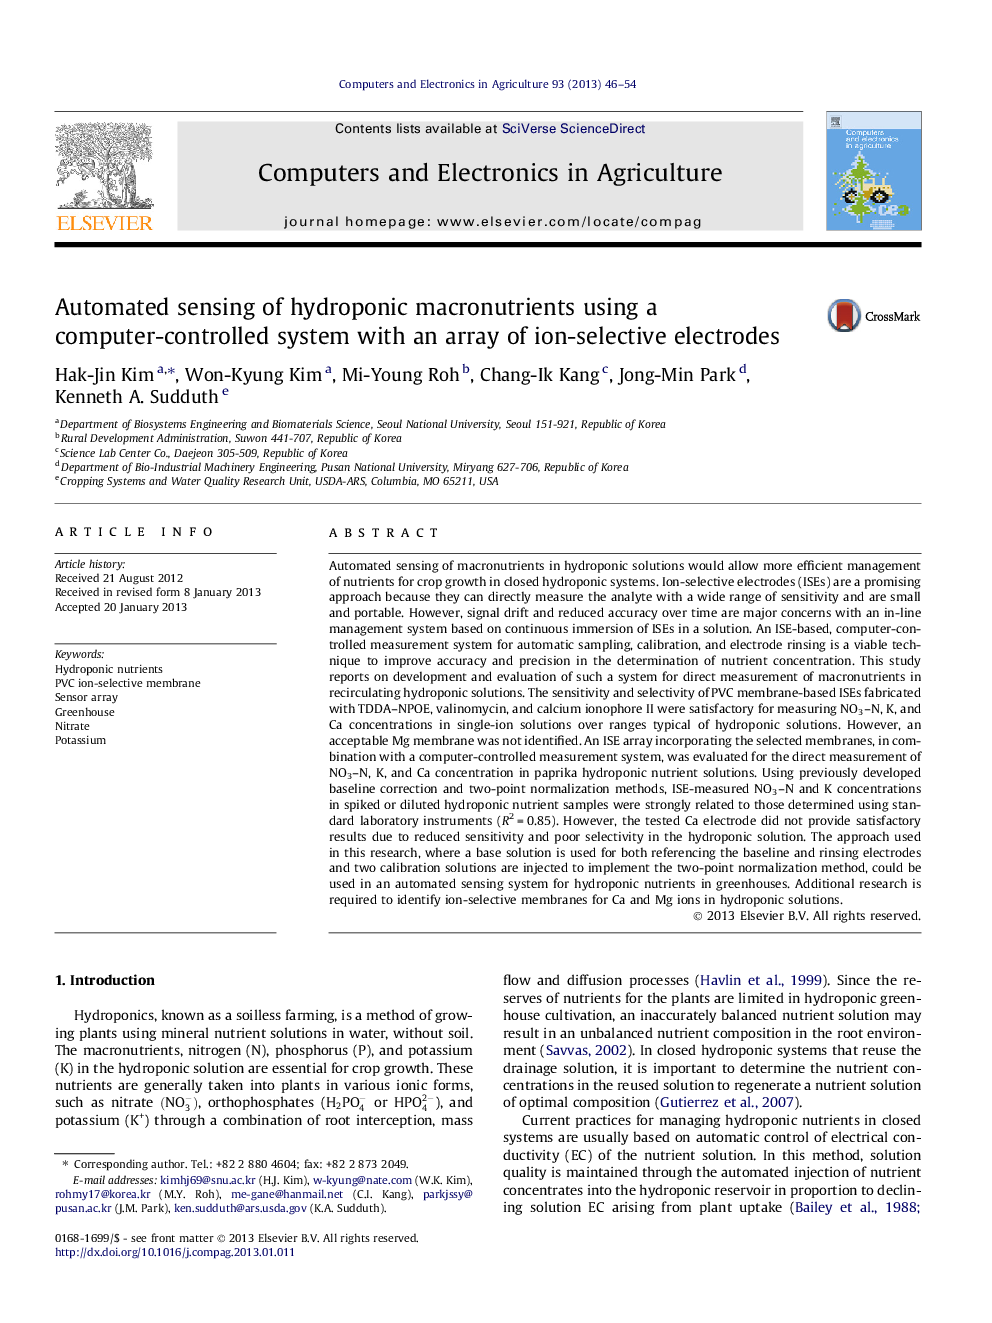 سنجش خودکار مغذی های هیدروپونیک با استفاده از یک سیستم کنترل کامپیوتری با مجموعه ای از الکترودهای انتخاب یونی 